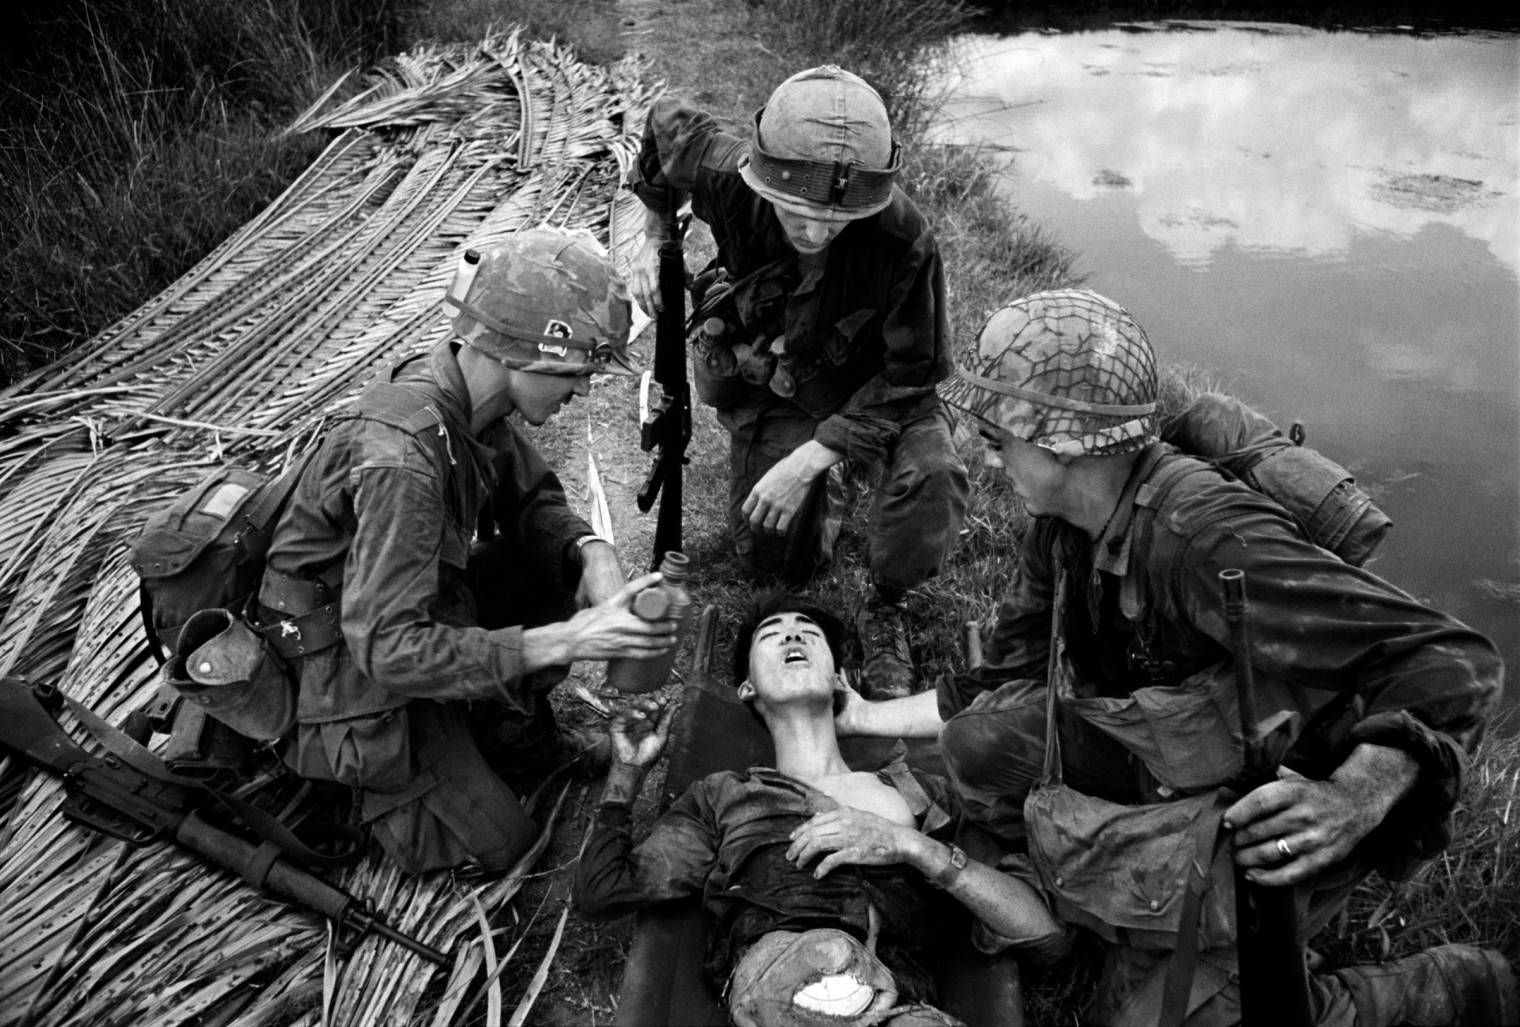 日本拍摄越南战争图片